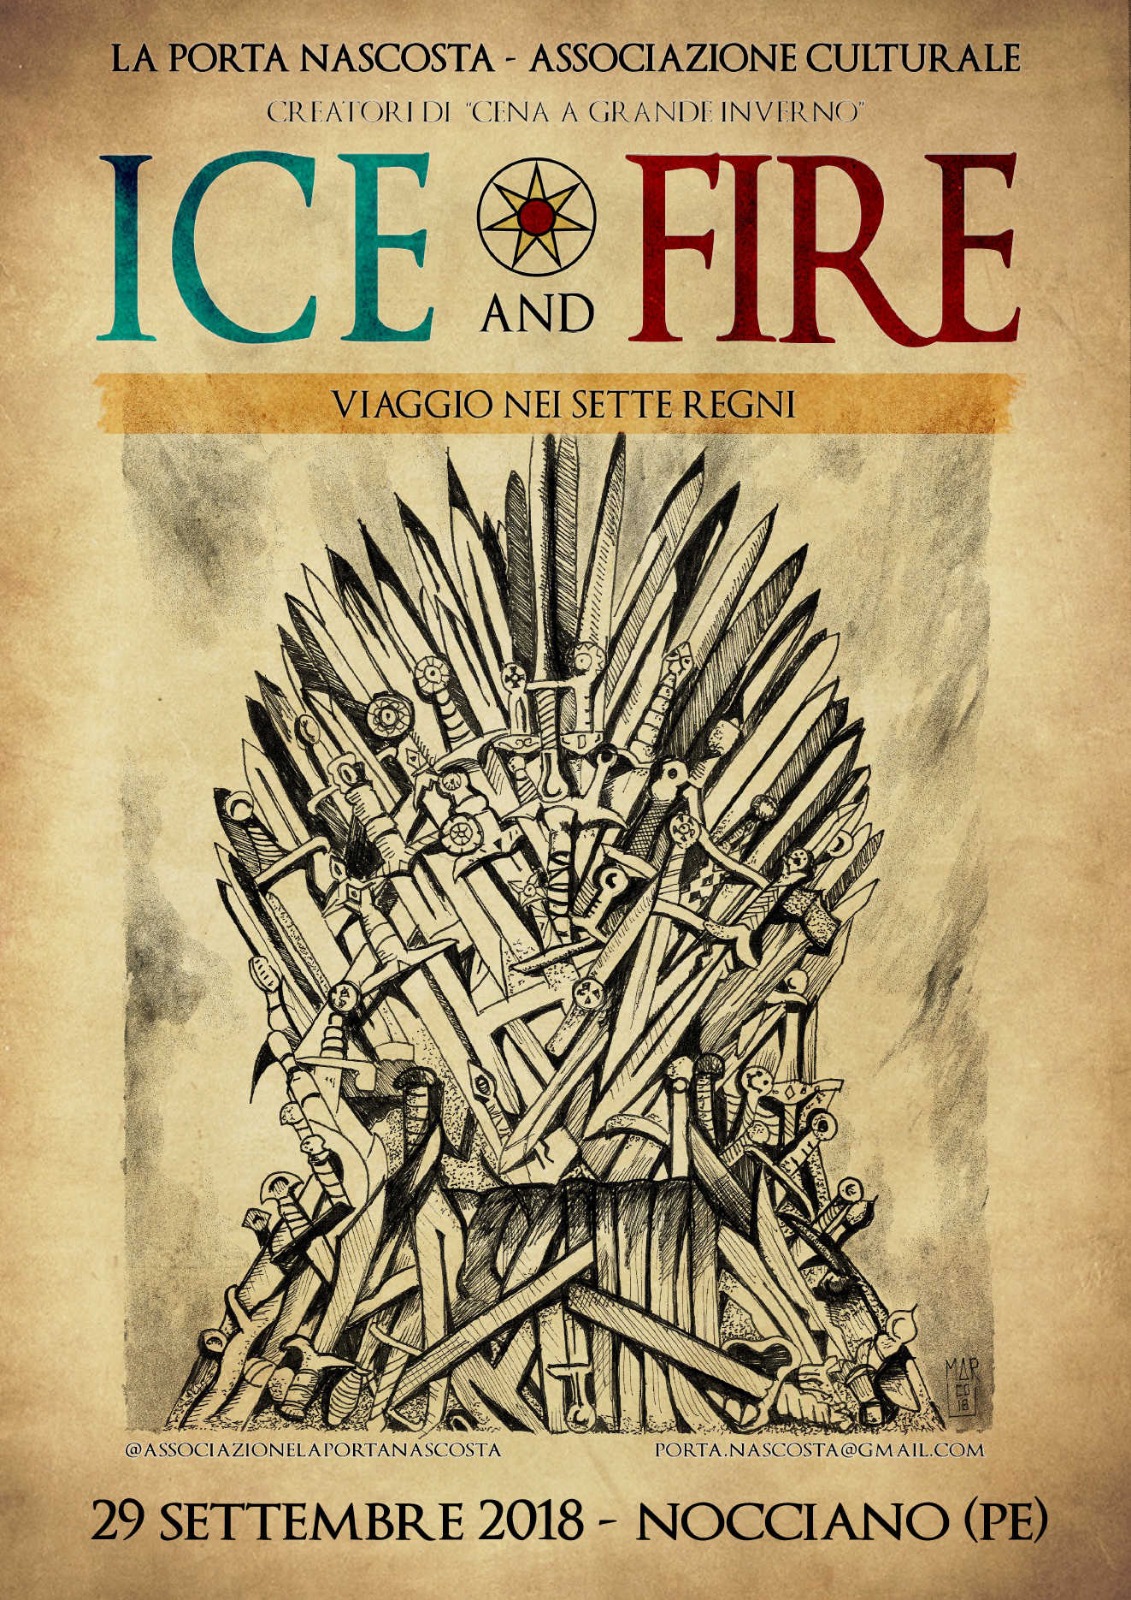 Ice and Fire: viaggio nei sette regni - locandina ufficiale